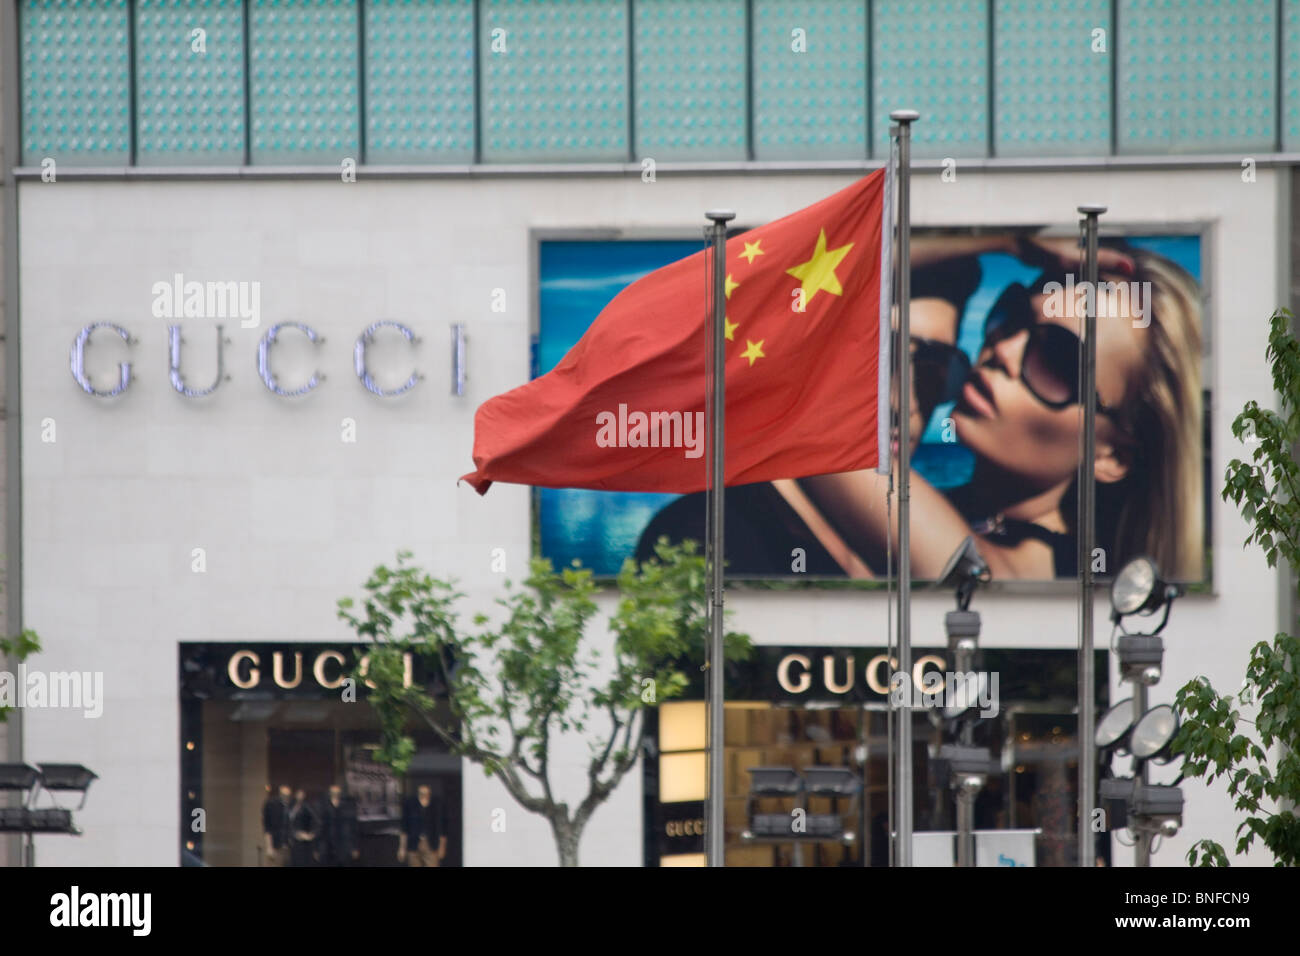 Comunista cinese sventola bandiera nella parte anteriore del negozio di Gucci, Shanghai, Cina Foto Stock